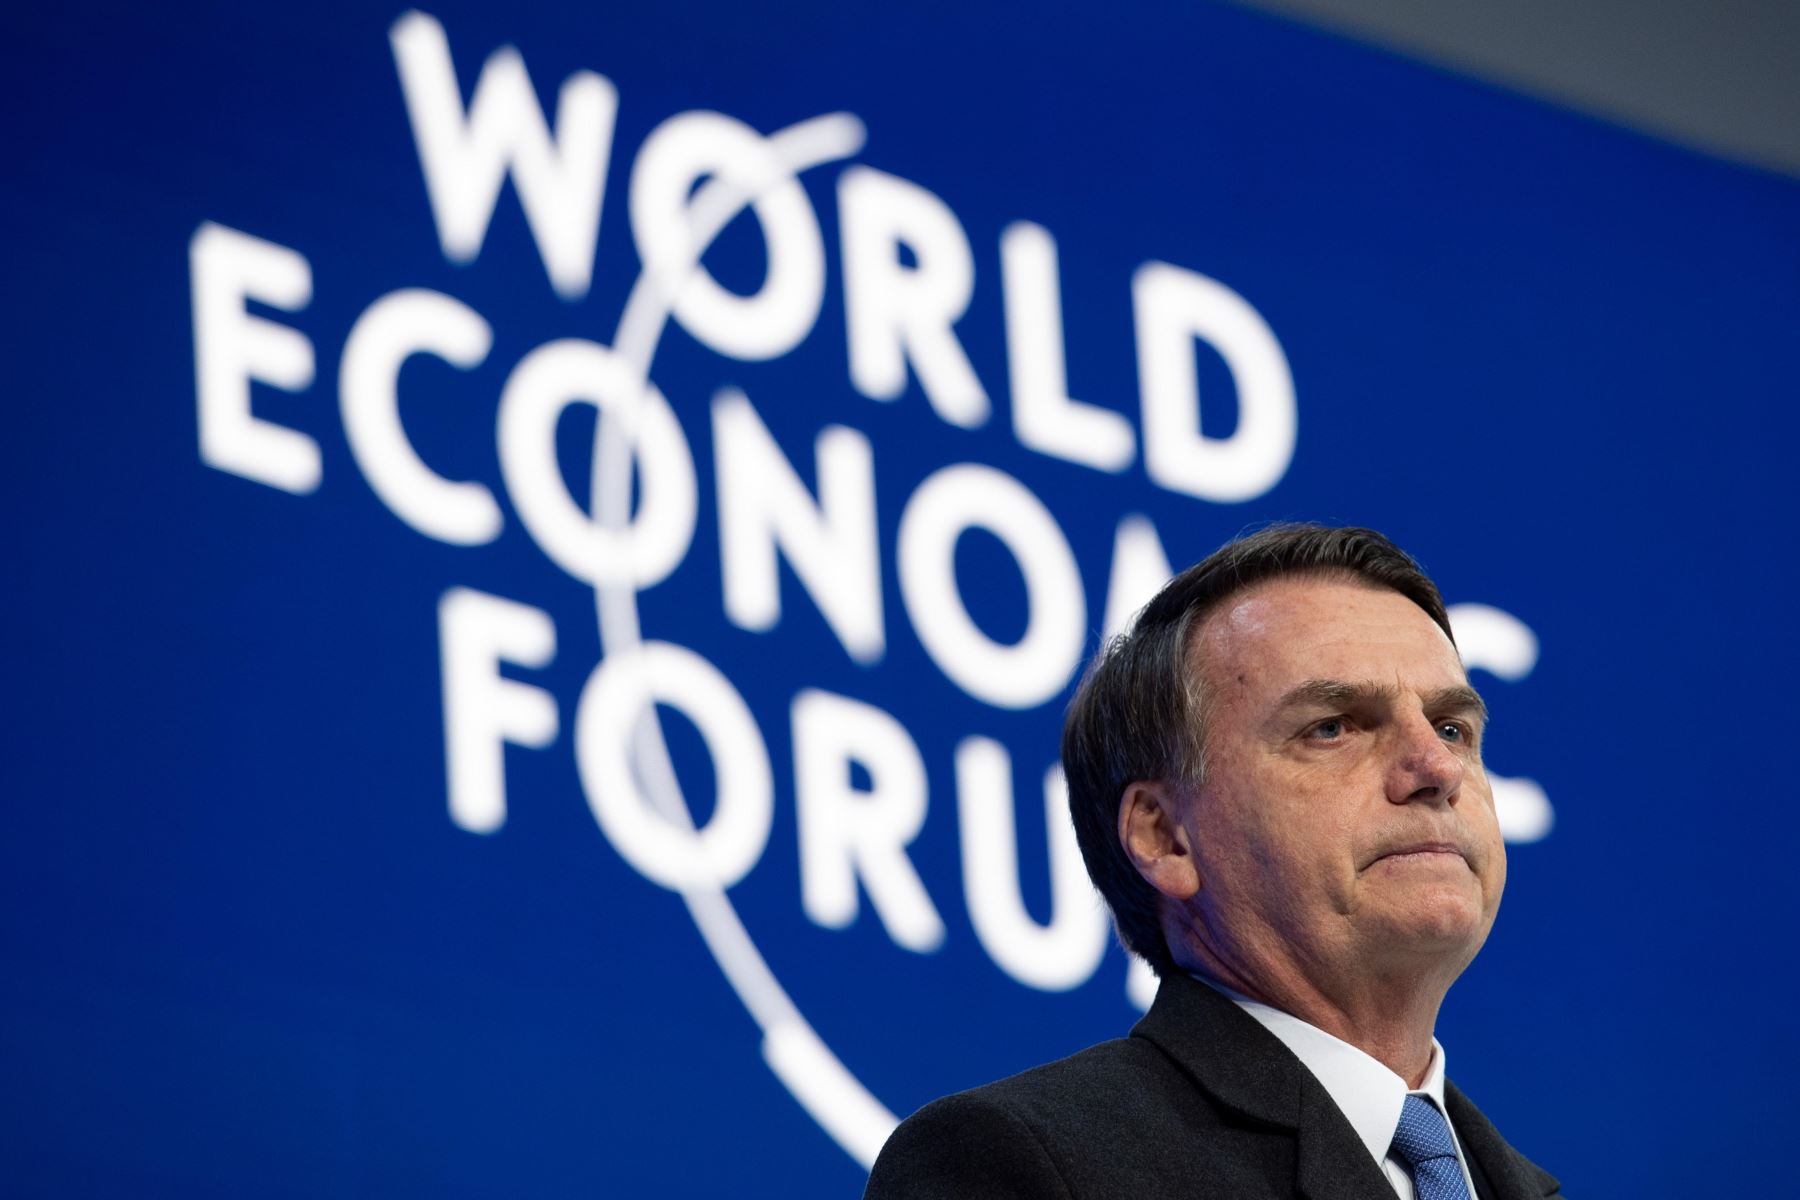 El presidente de Brasil, Jair Bolsonaro, pronuncia su discurso en Davos. Foto: EFE.